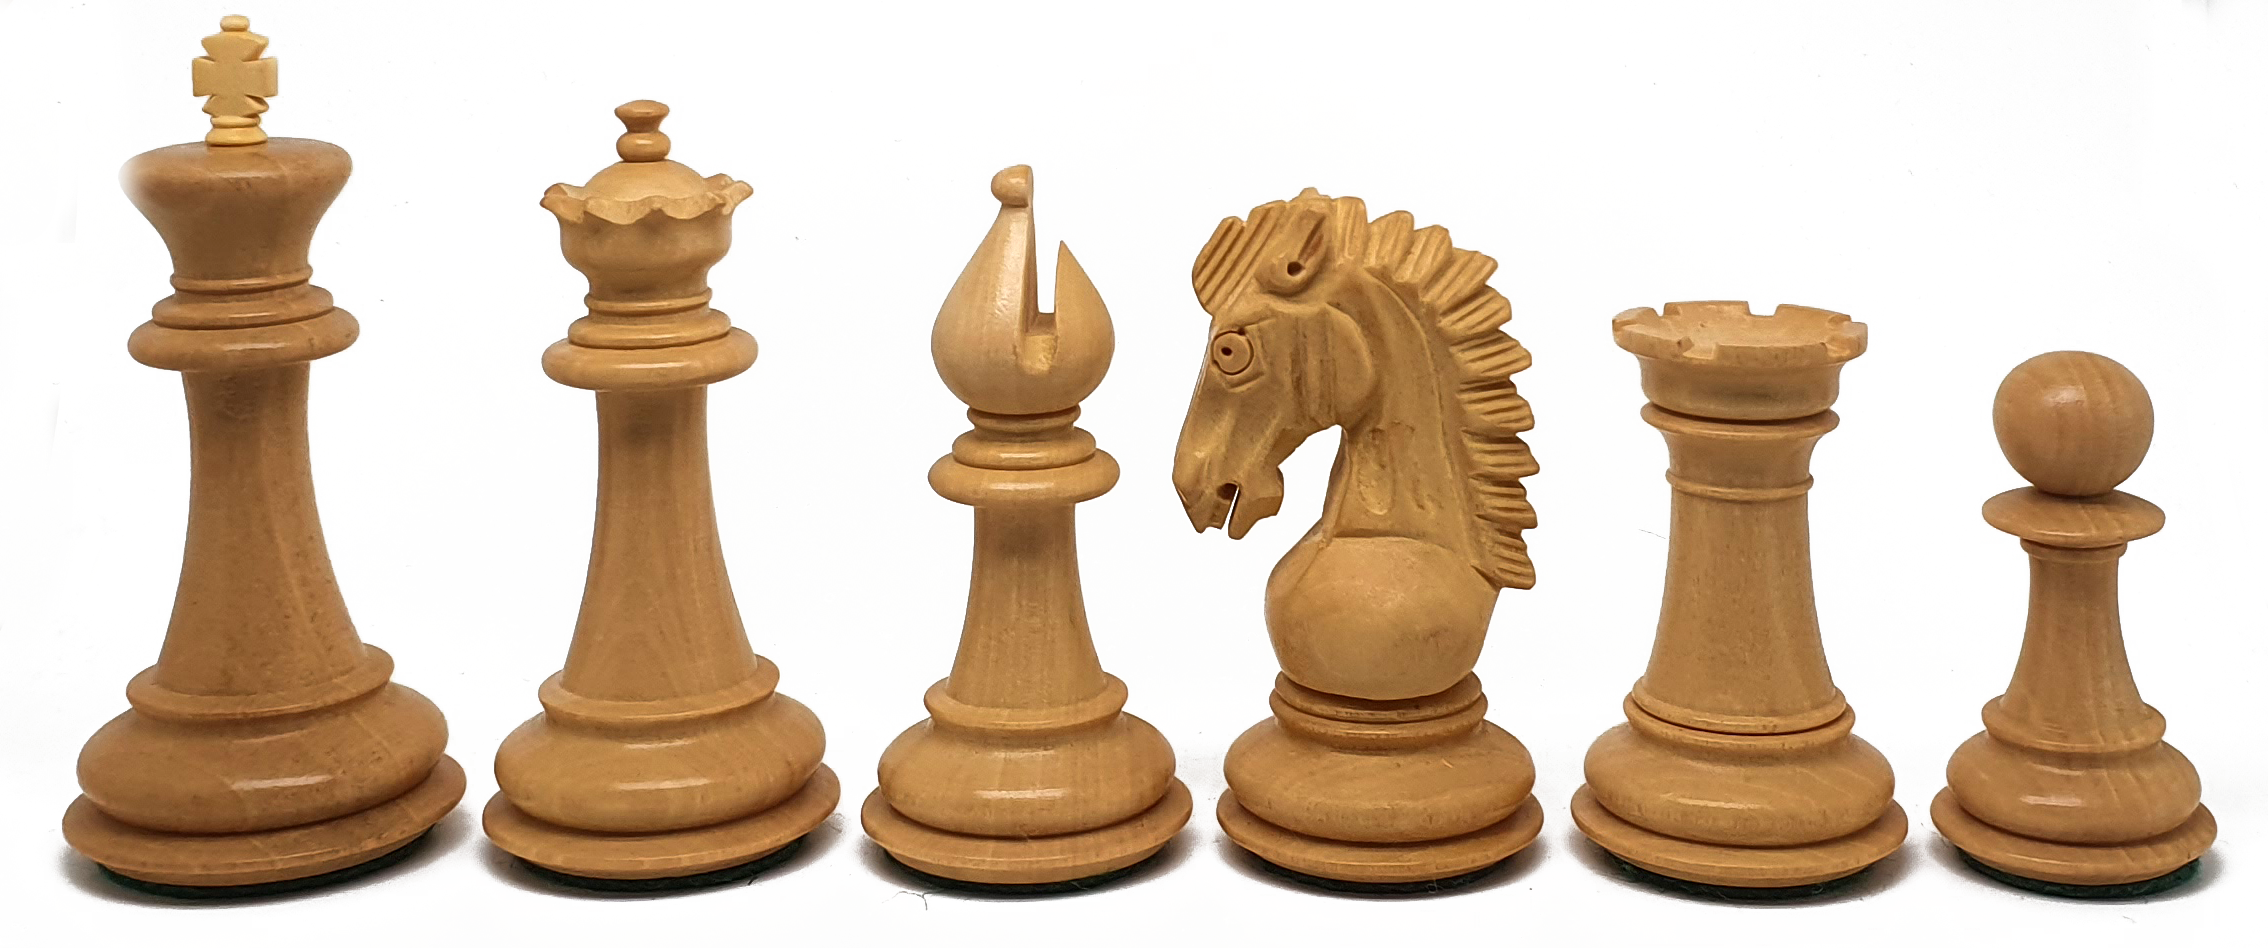 VI/ Piezas de ajedrez modelo Adventure "3.75" Ebanizado.